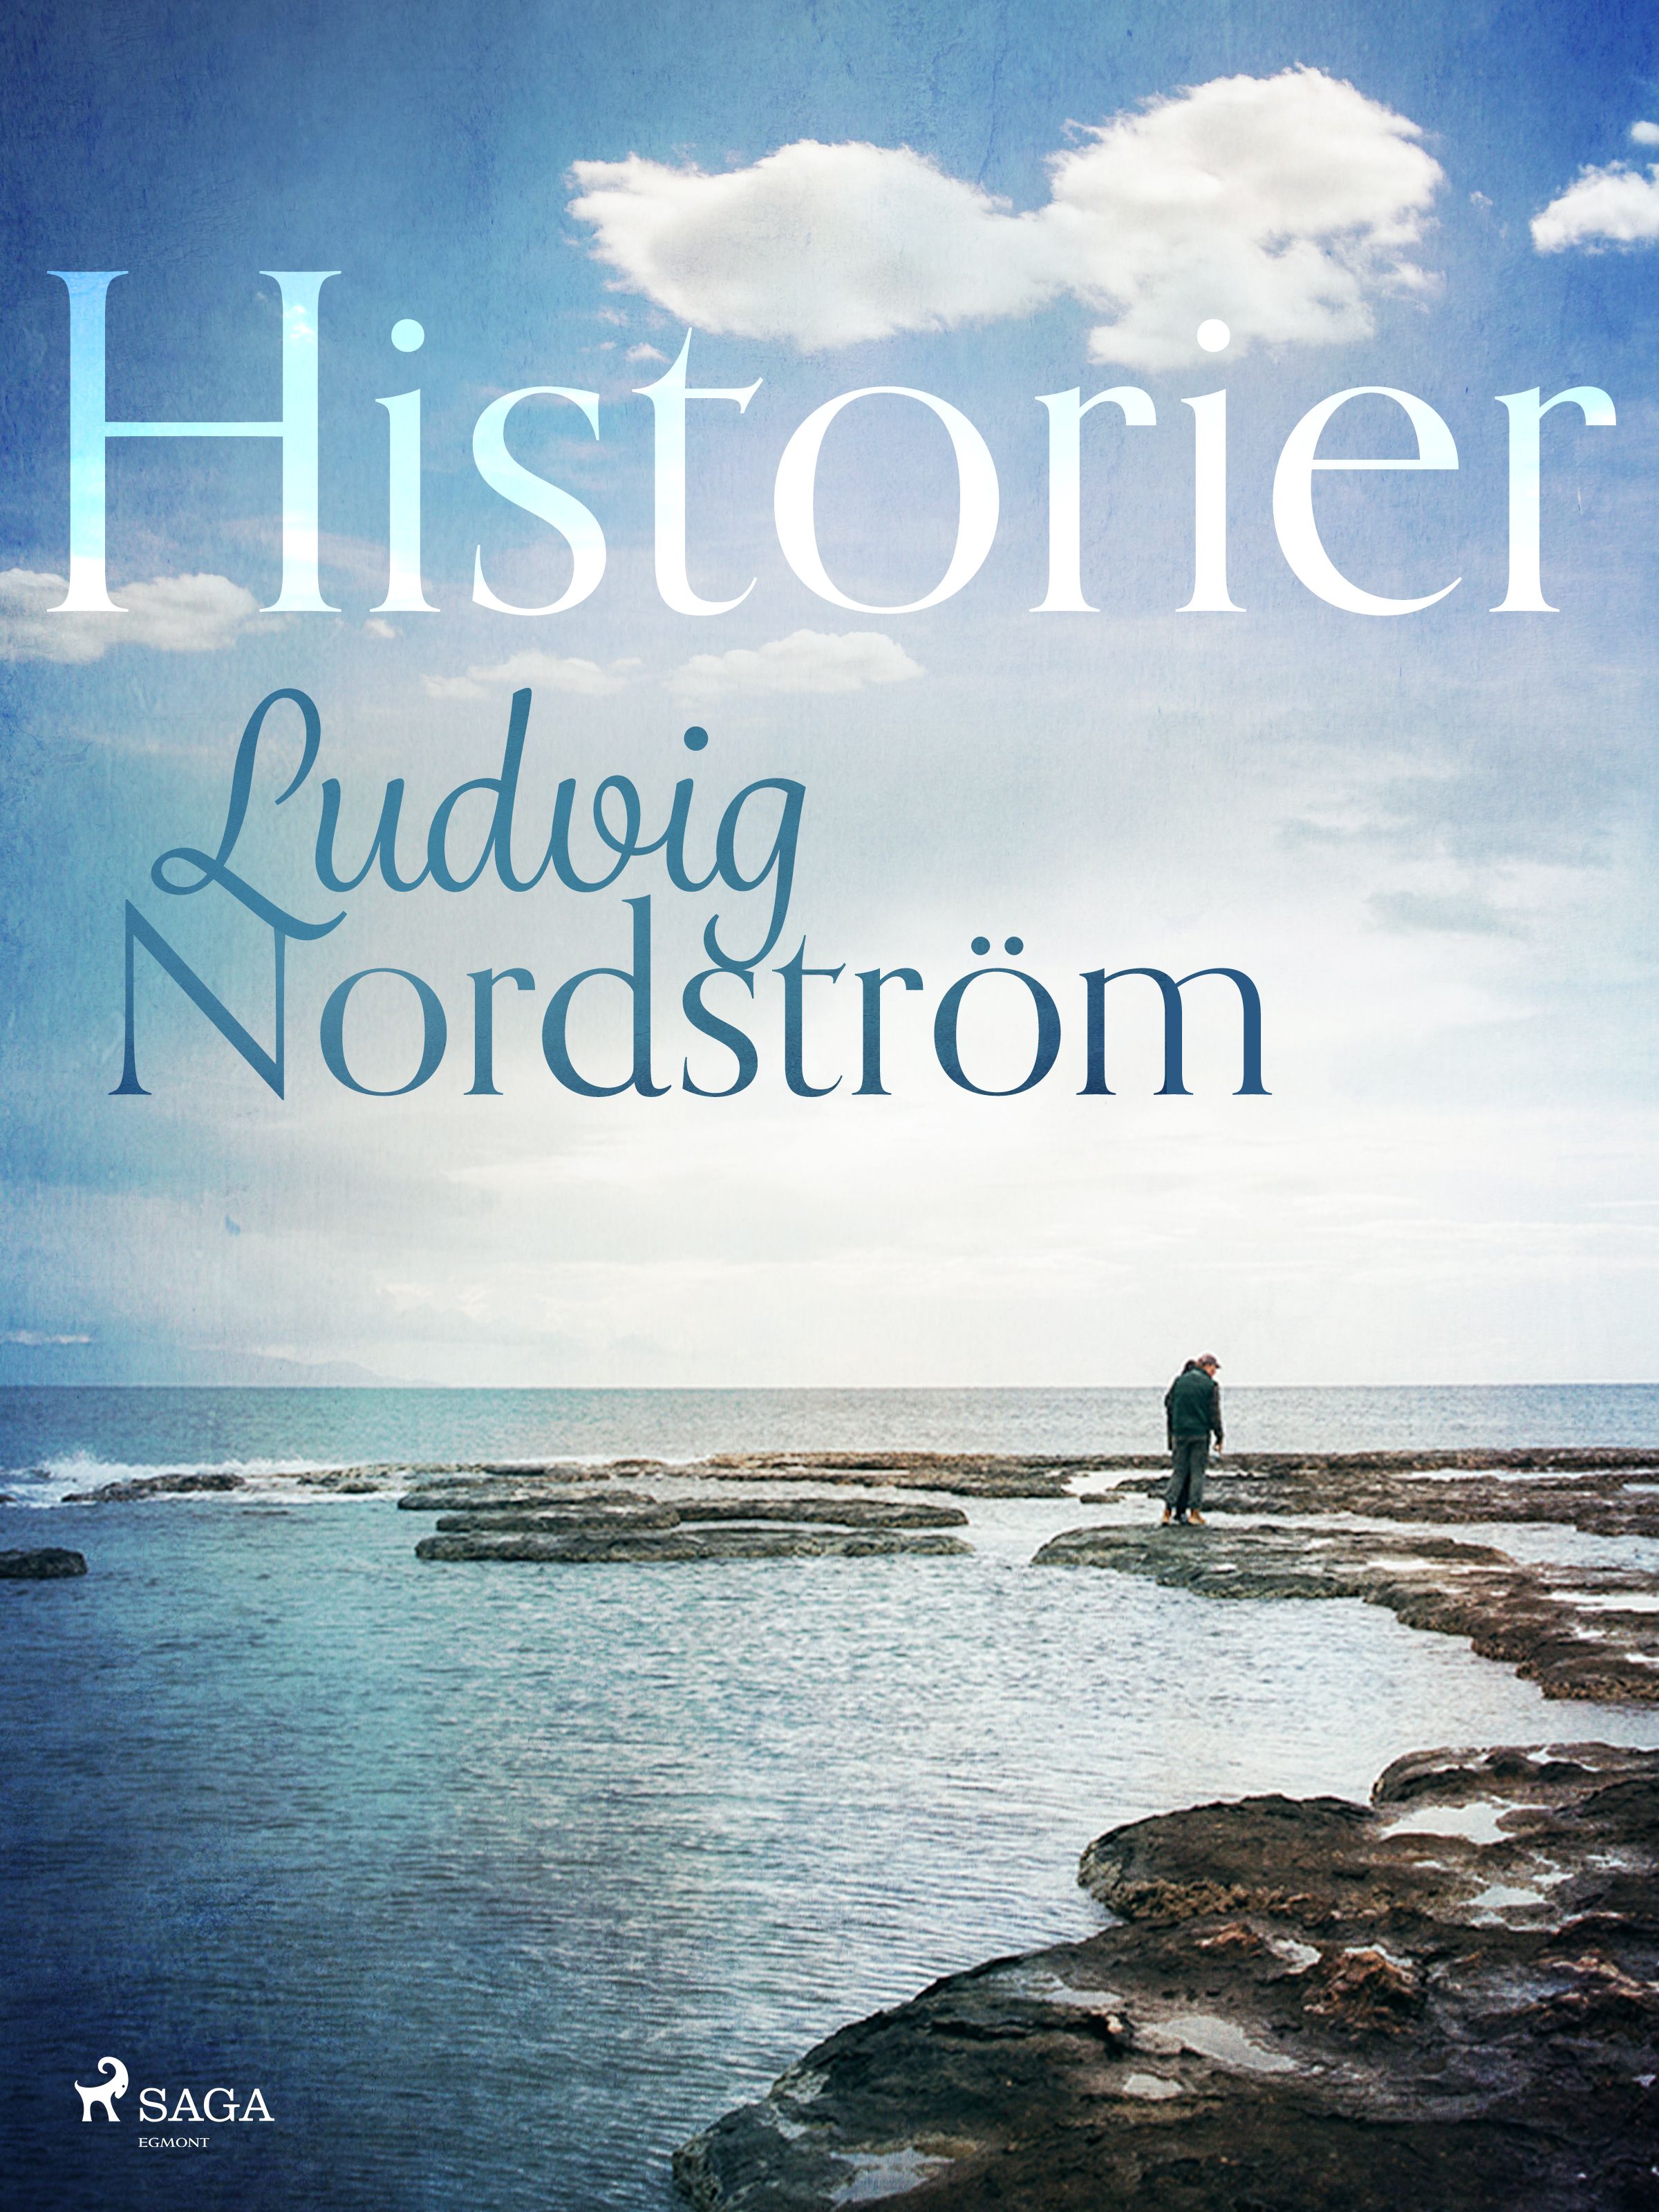 Historier, e-bog af Ludvig Nordström